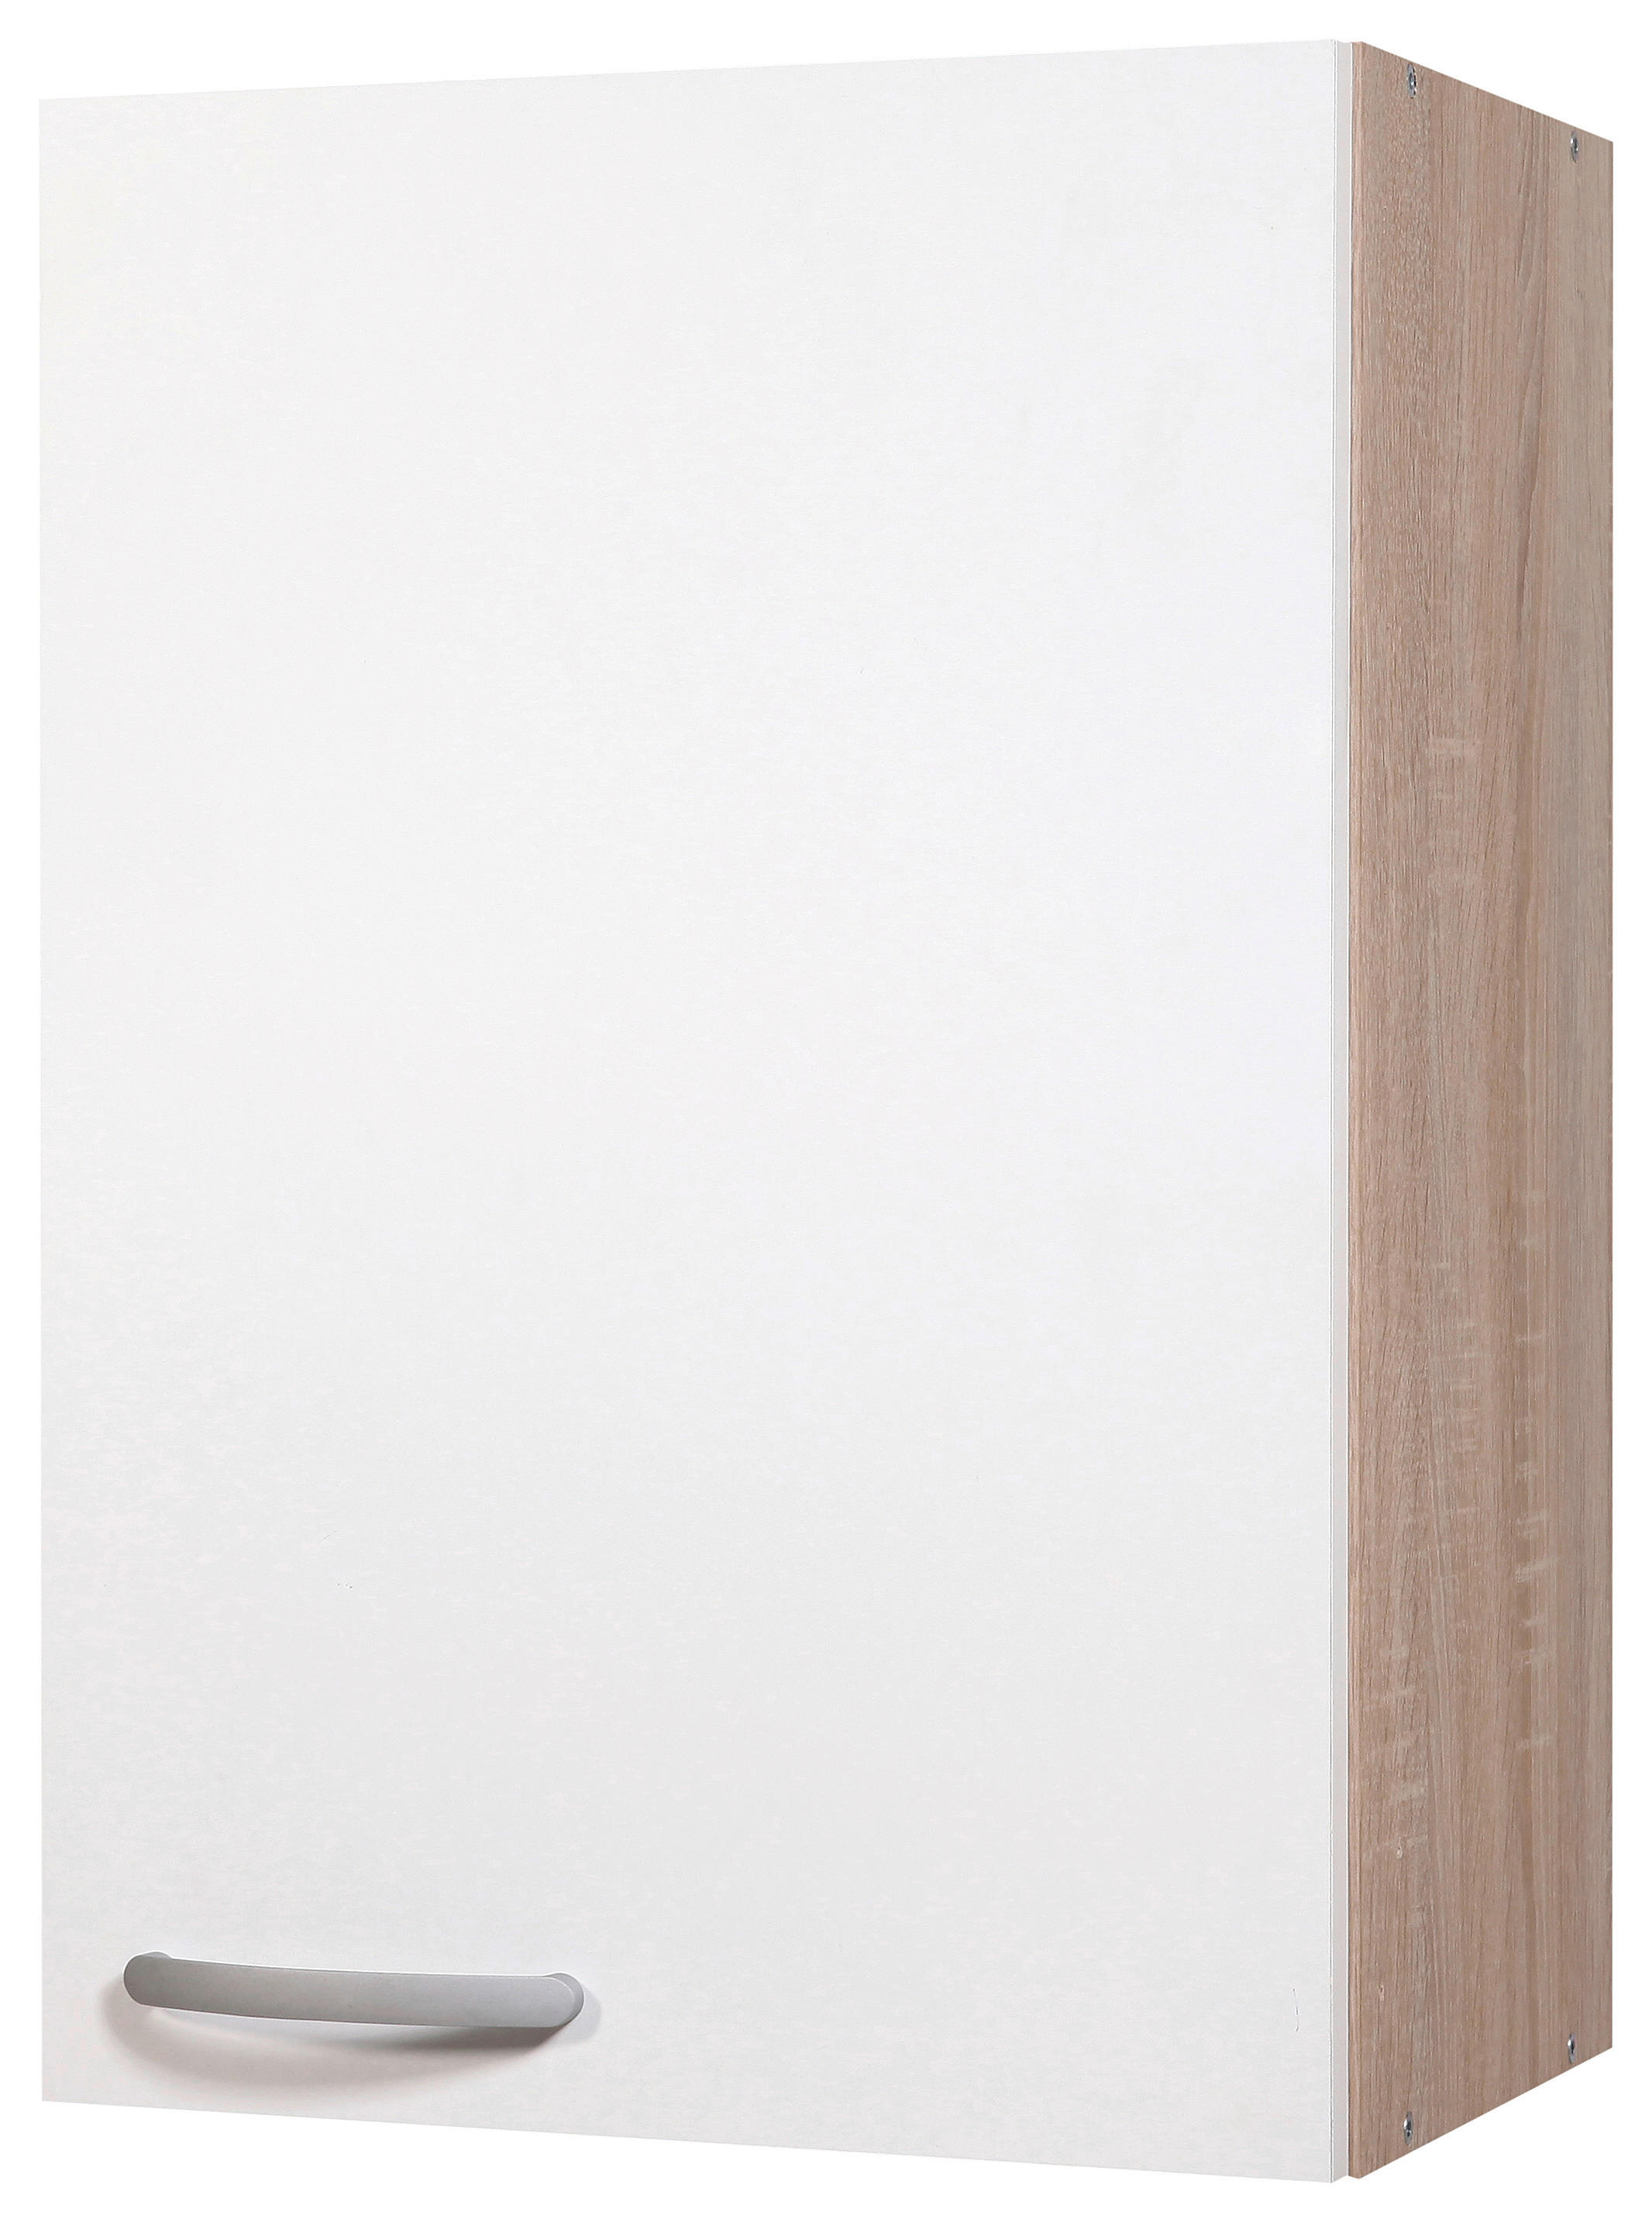 KONYHAI FALISZEKRÉNY - Sonoma tölgy/alumínium színű, Design, faalapú anyag/fém (40/60/30cm) - Boxxx